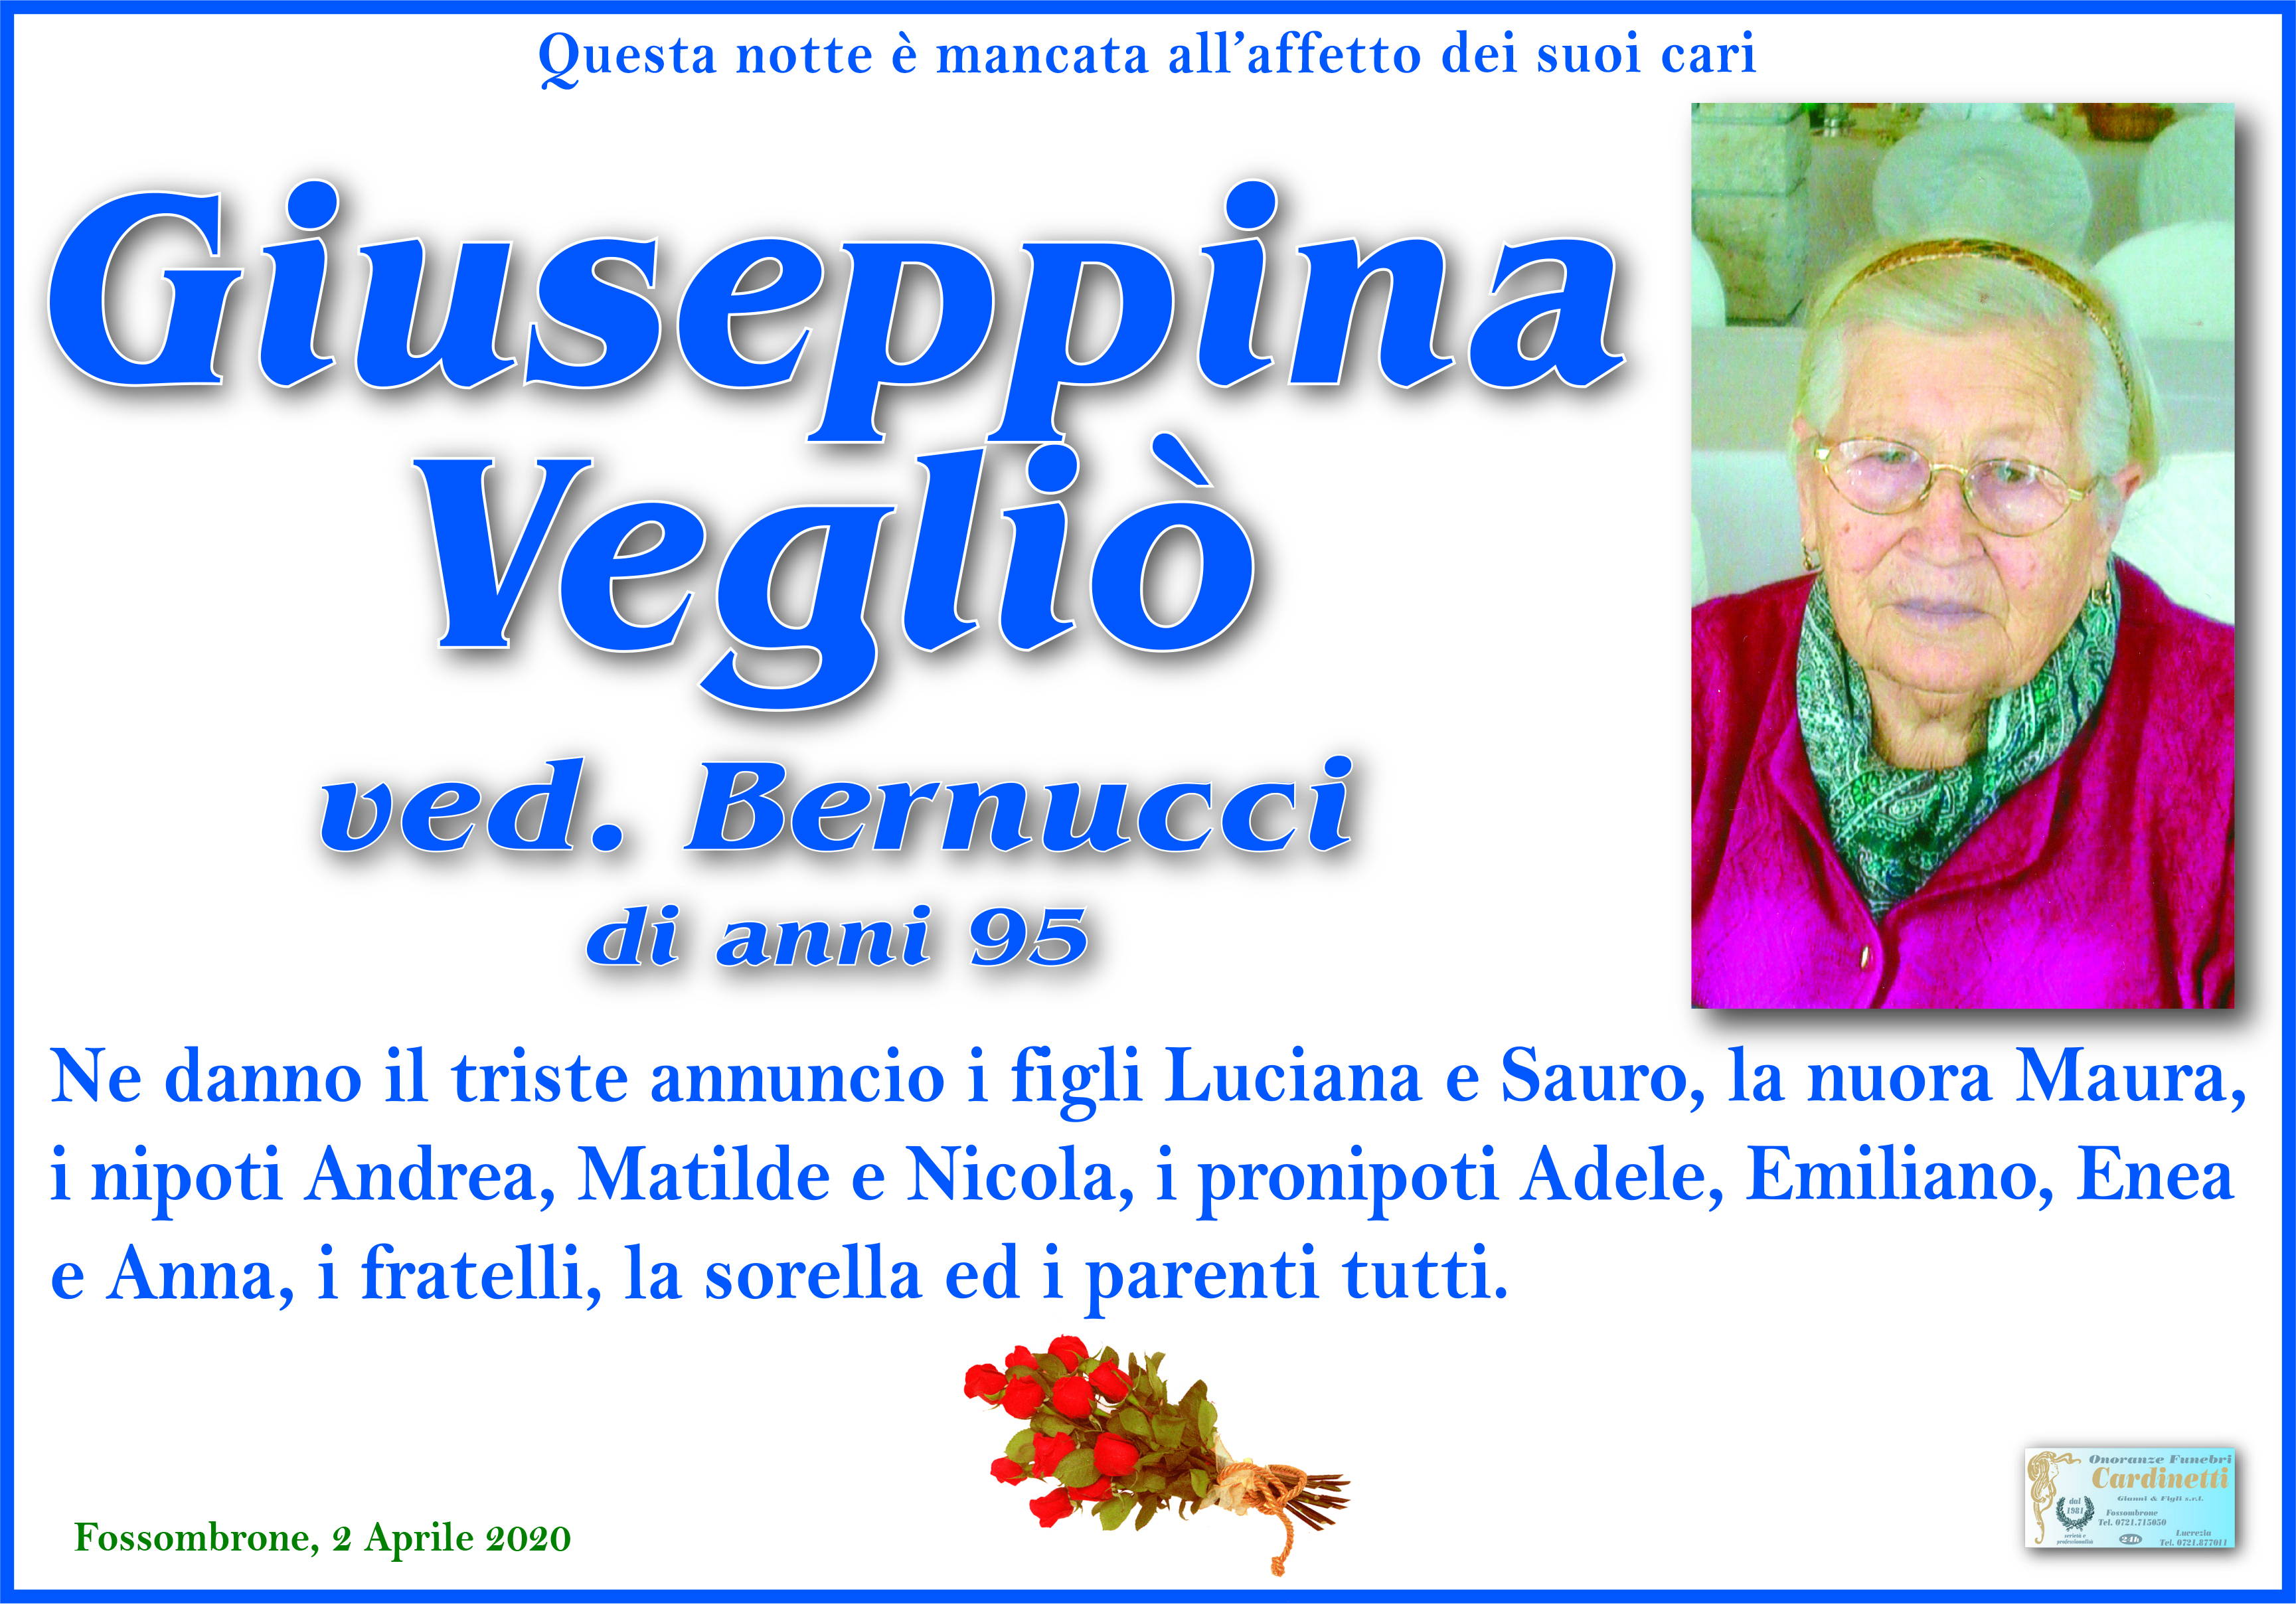 Giuseppina Vegliò